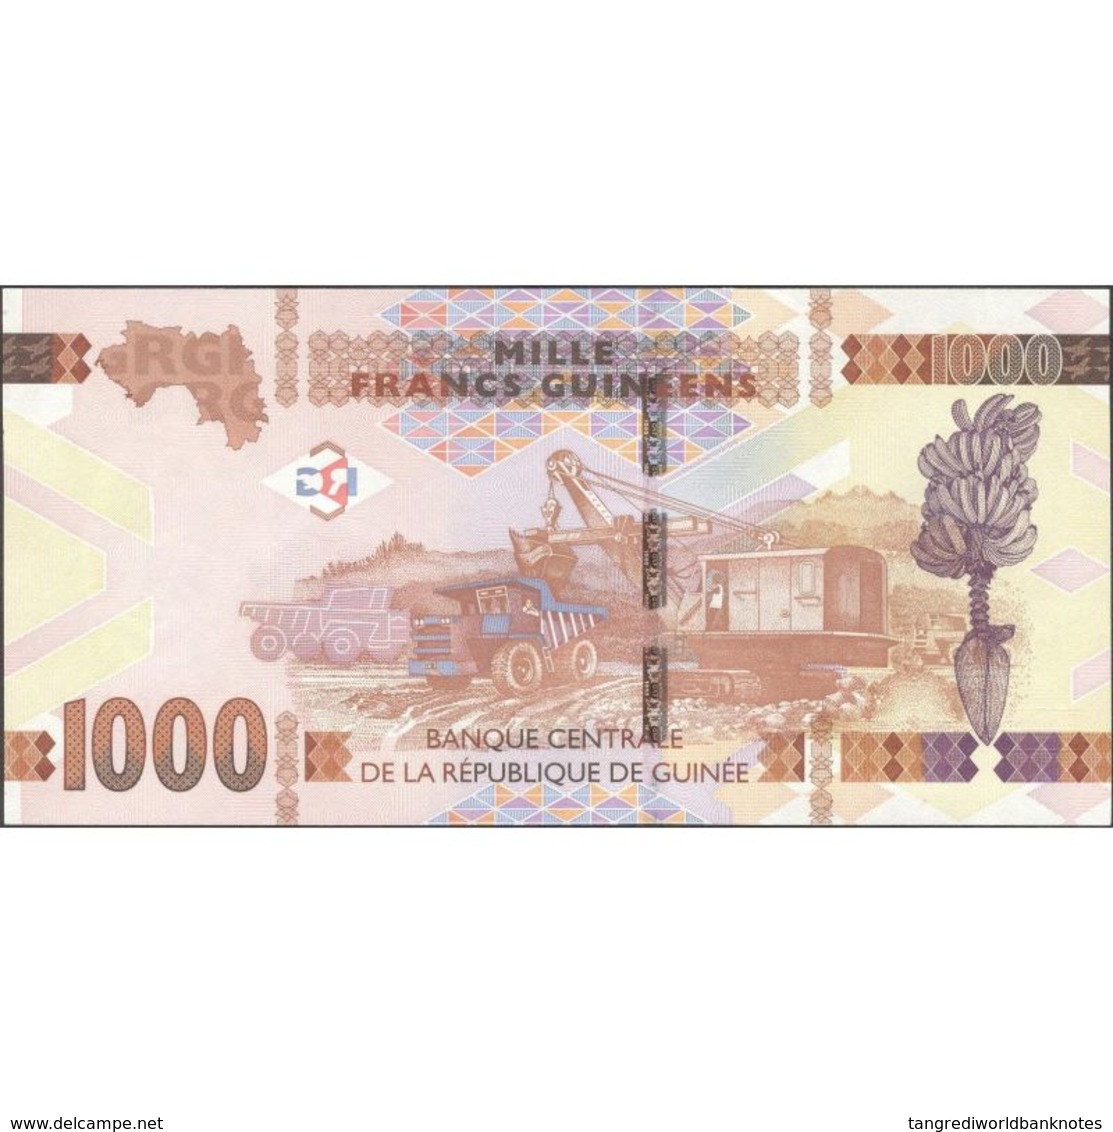 TWN - GUINEA 48a - 1000 1.000 Francs 2015 Prefix BH UNC - Guinea